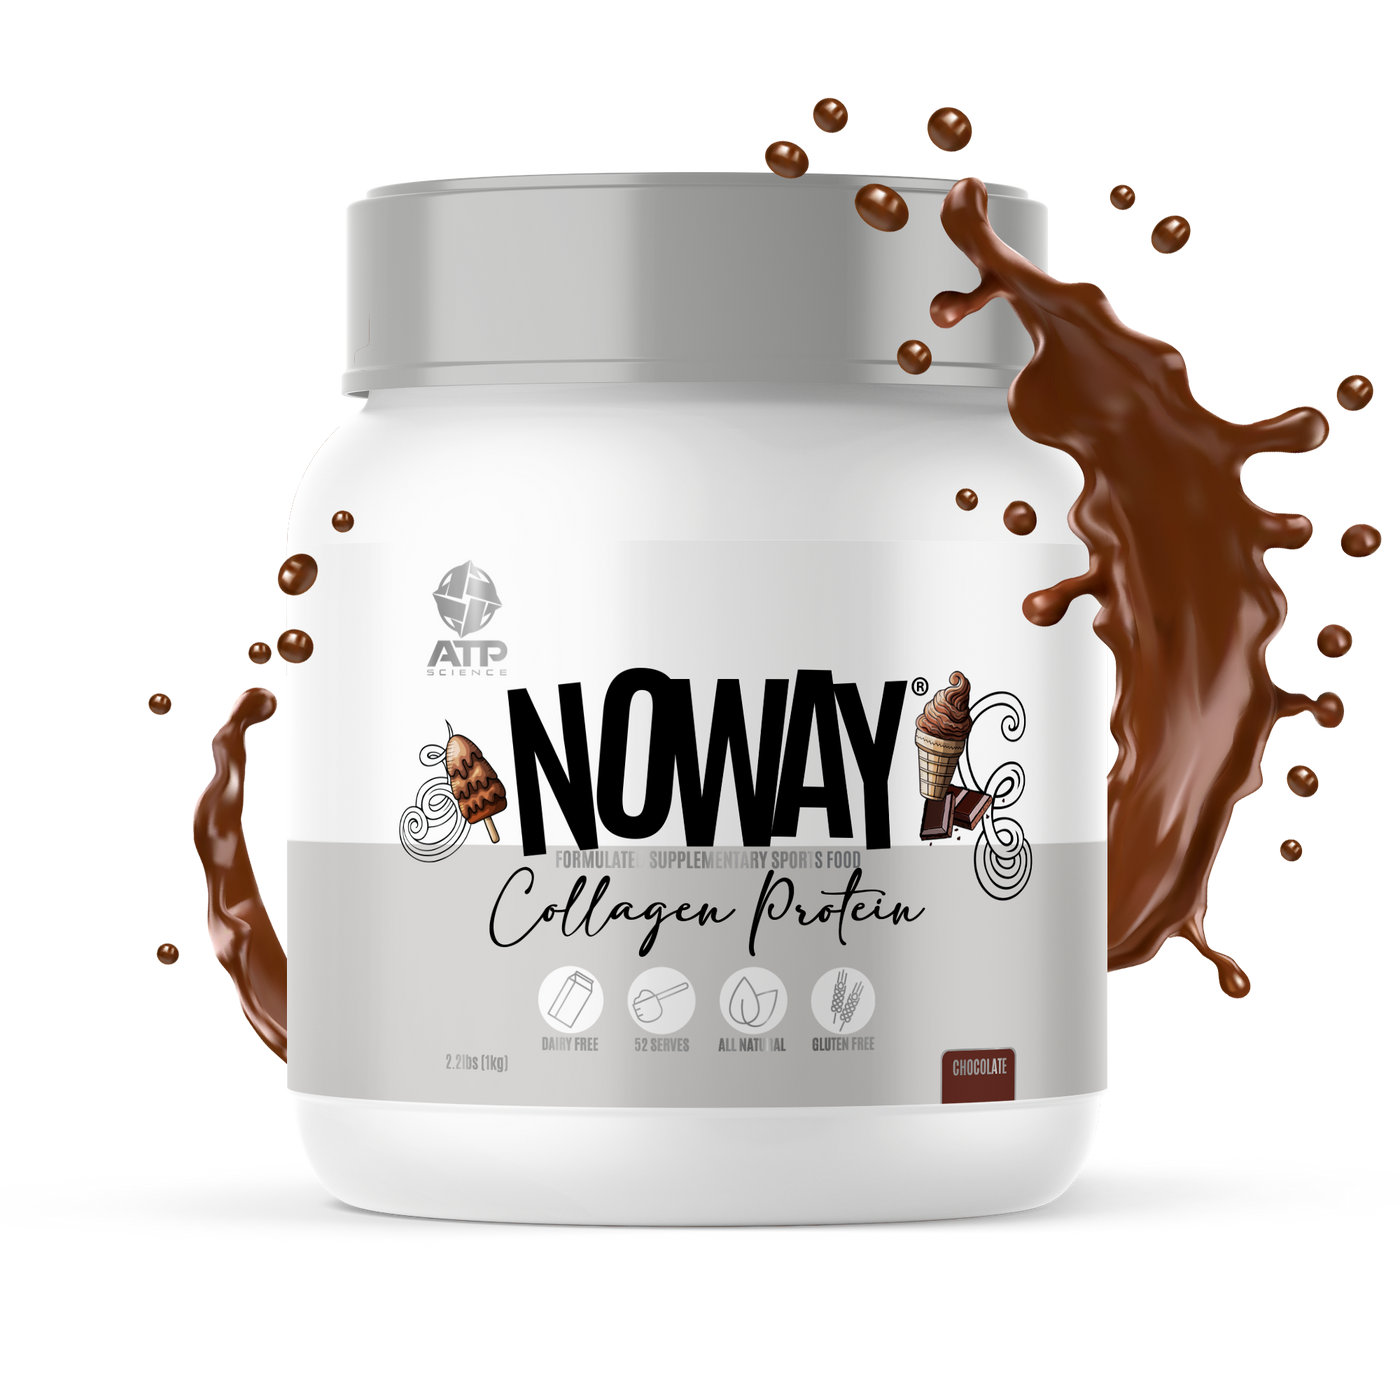 NOWAY Bodybalance Collagen Protein - 1kg Chocolate